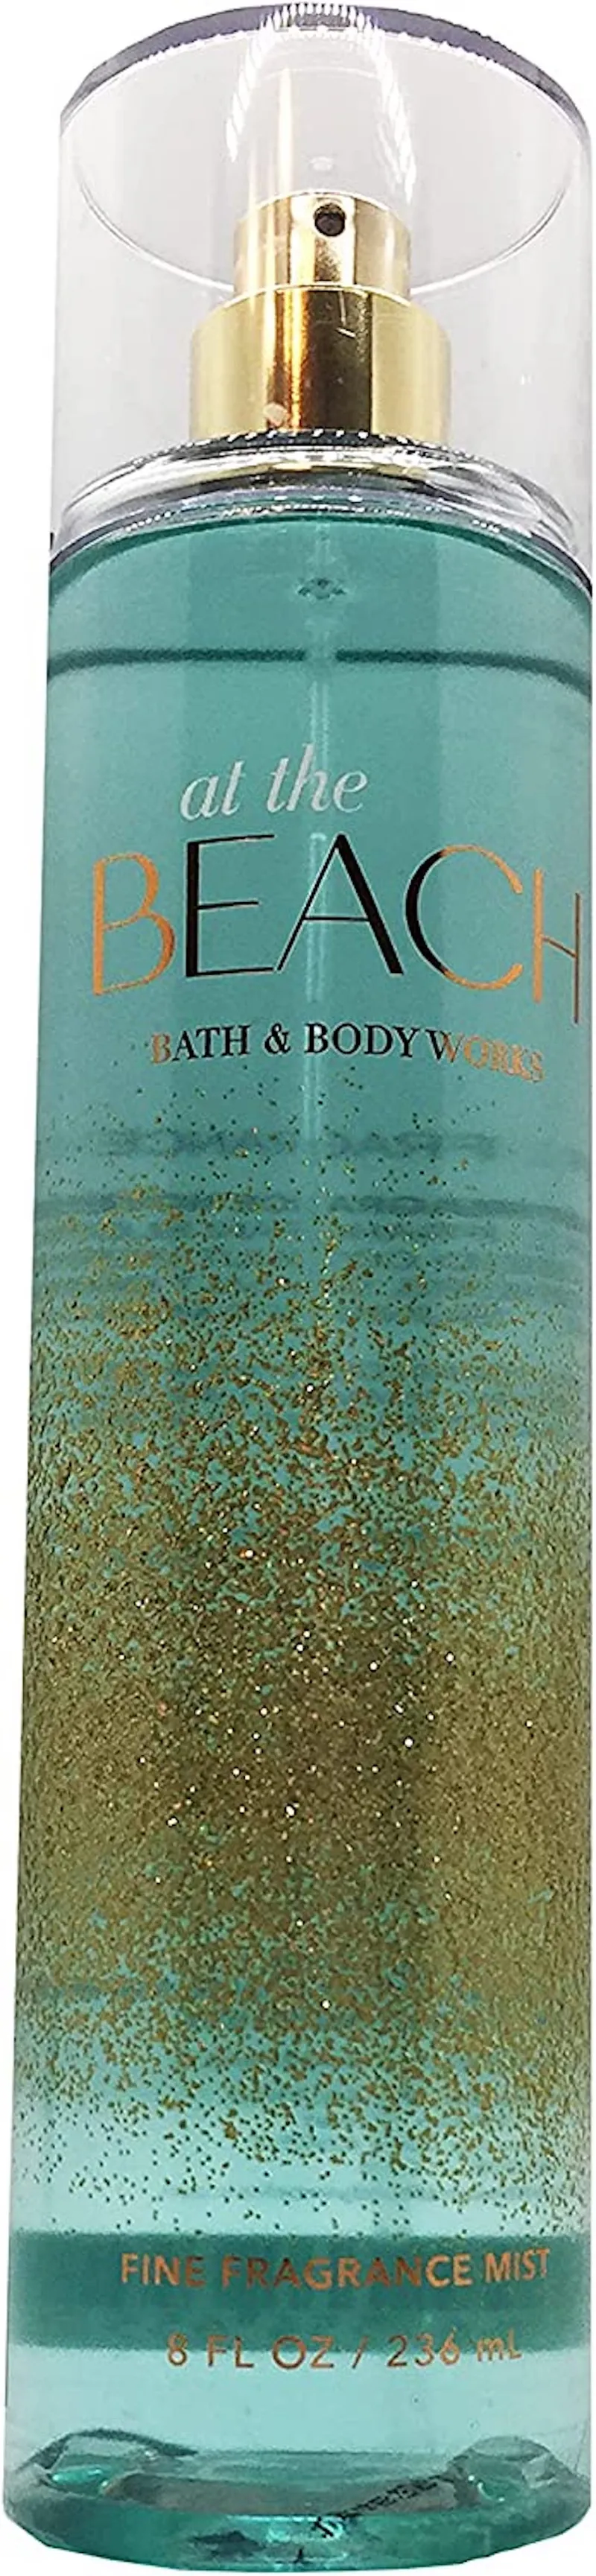 Bath & Body Works at The Beach Fine Fragrance Mist